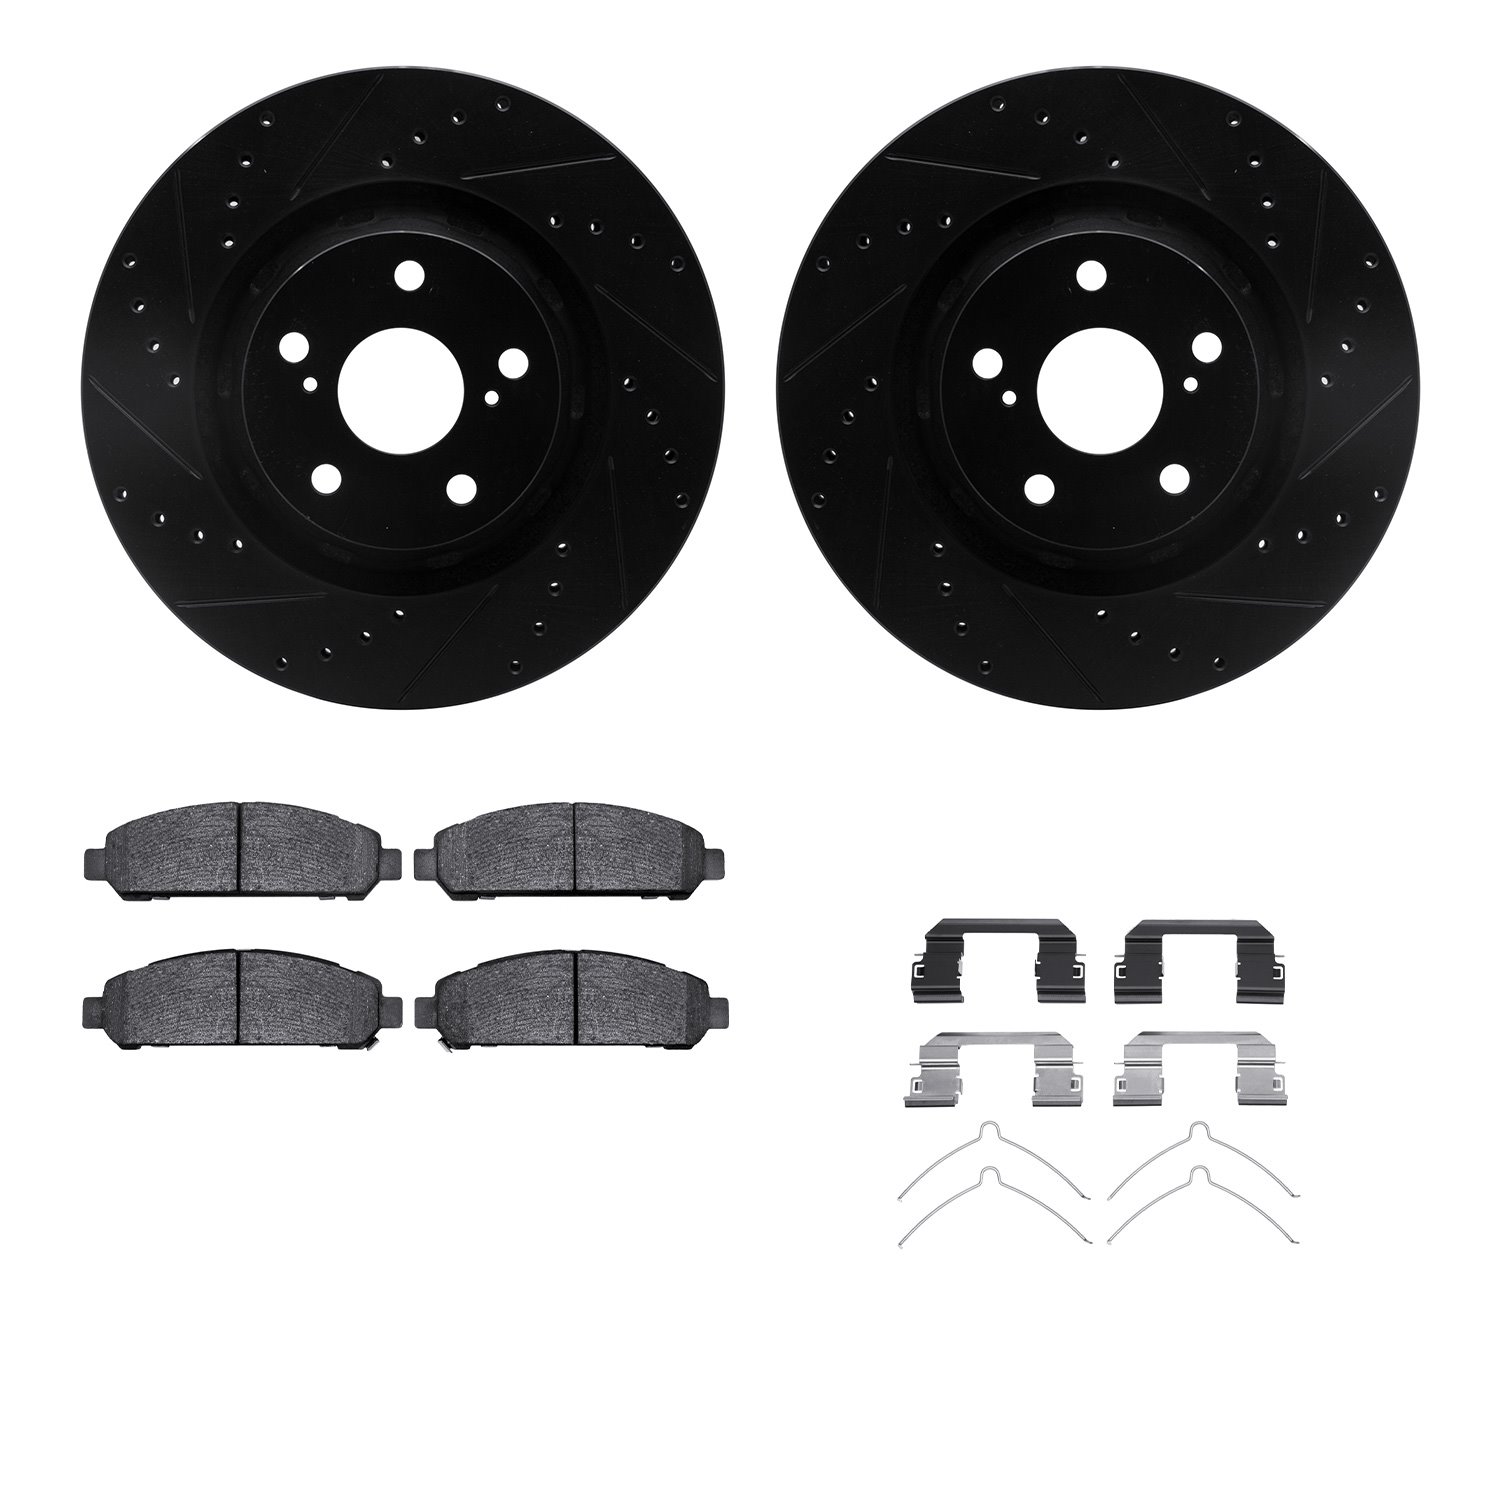 8312-76168 Drilled/Slotted Brake Rotors with 3000-Series Ceramic Brake Pads Kit & Hardware [Black], 2009-2015 Lexus/Toyota/Scion